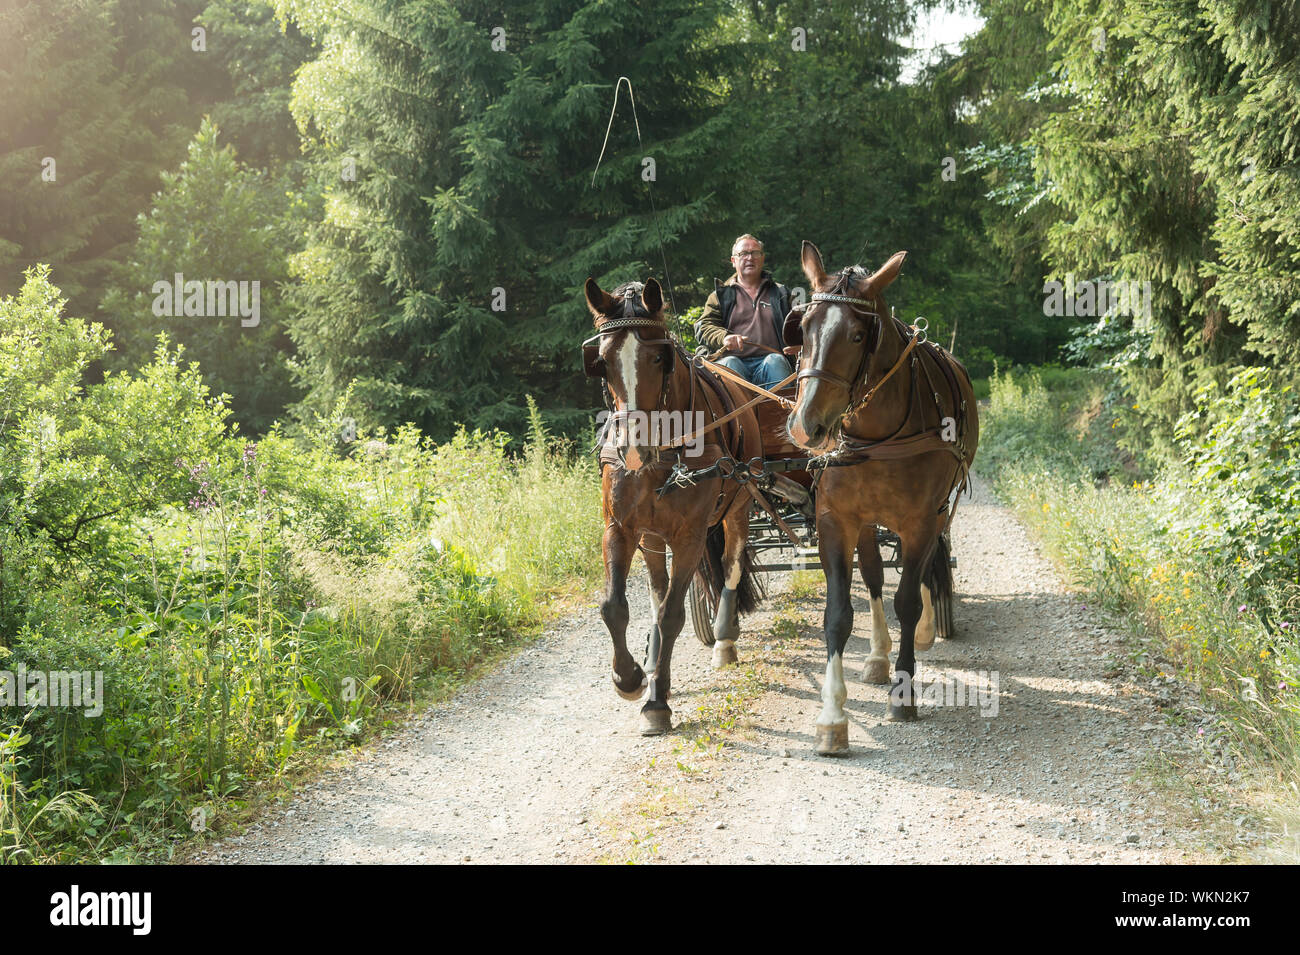 Un homme de 60 ans conduit un chariot avec deux chevaux lourds de Thuringe saxonne (sang chaud). Il vient de la forêt. Le soleil brille dans l'été. Banque D'Images